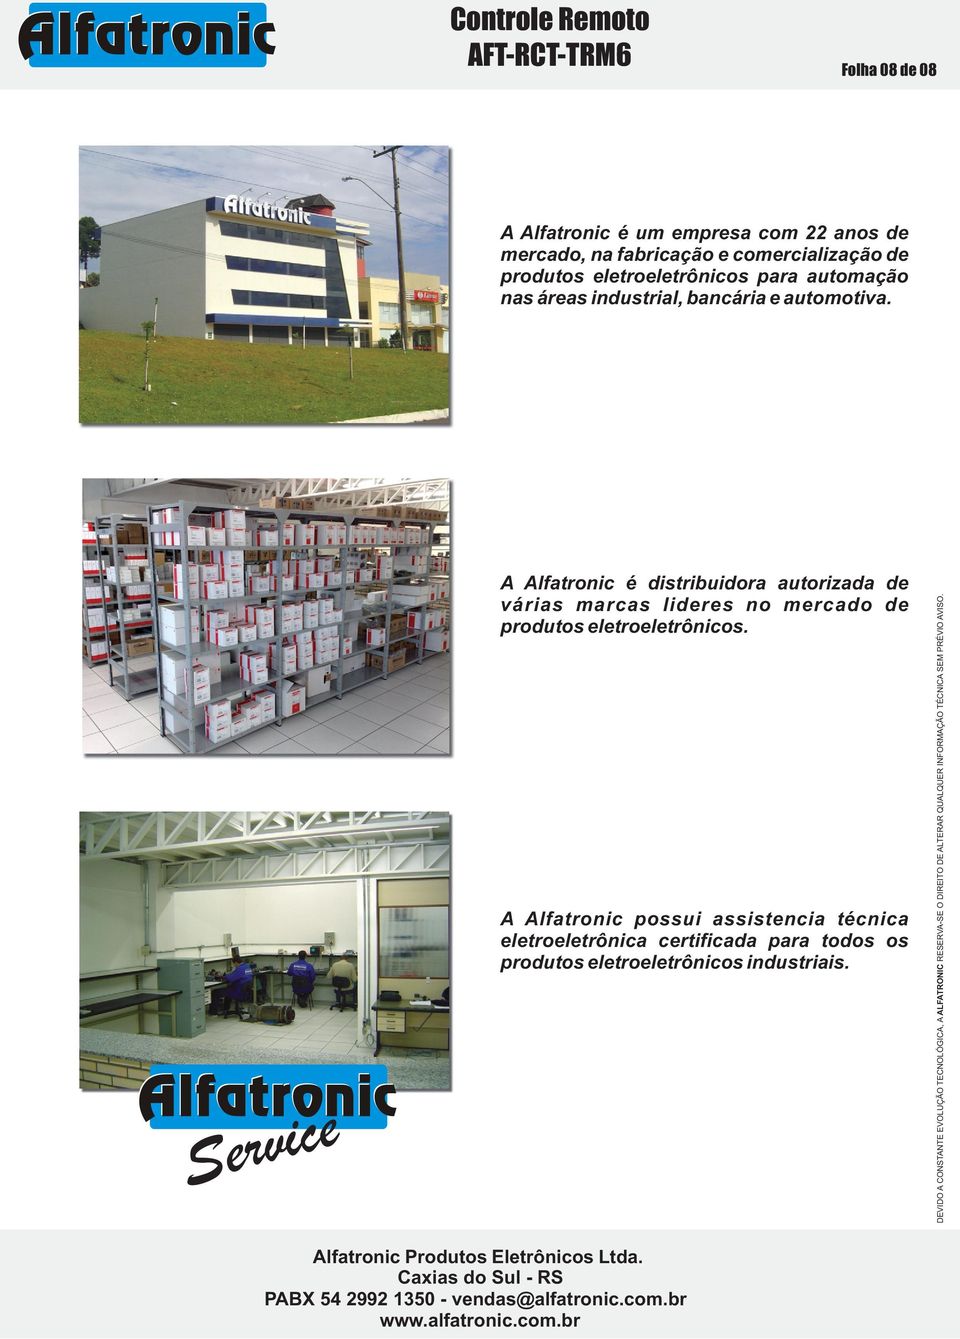 A Alfatronic é distribuidora autorizada de várias marcas lideres no mercado de produtos eletroeletrônicos.